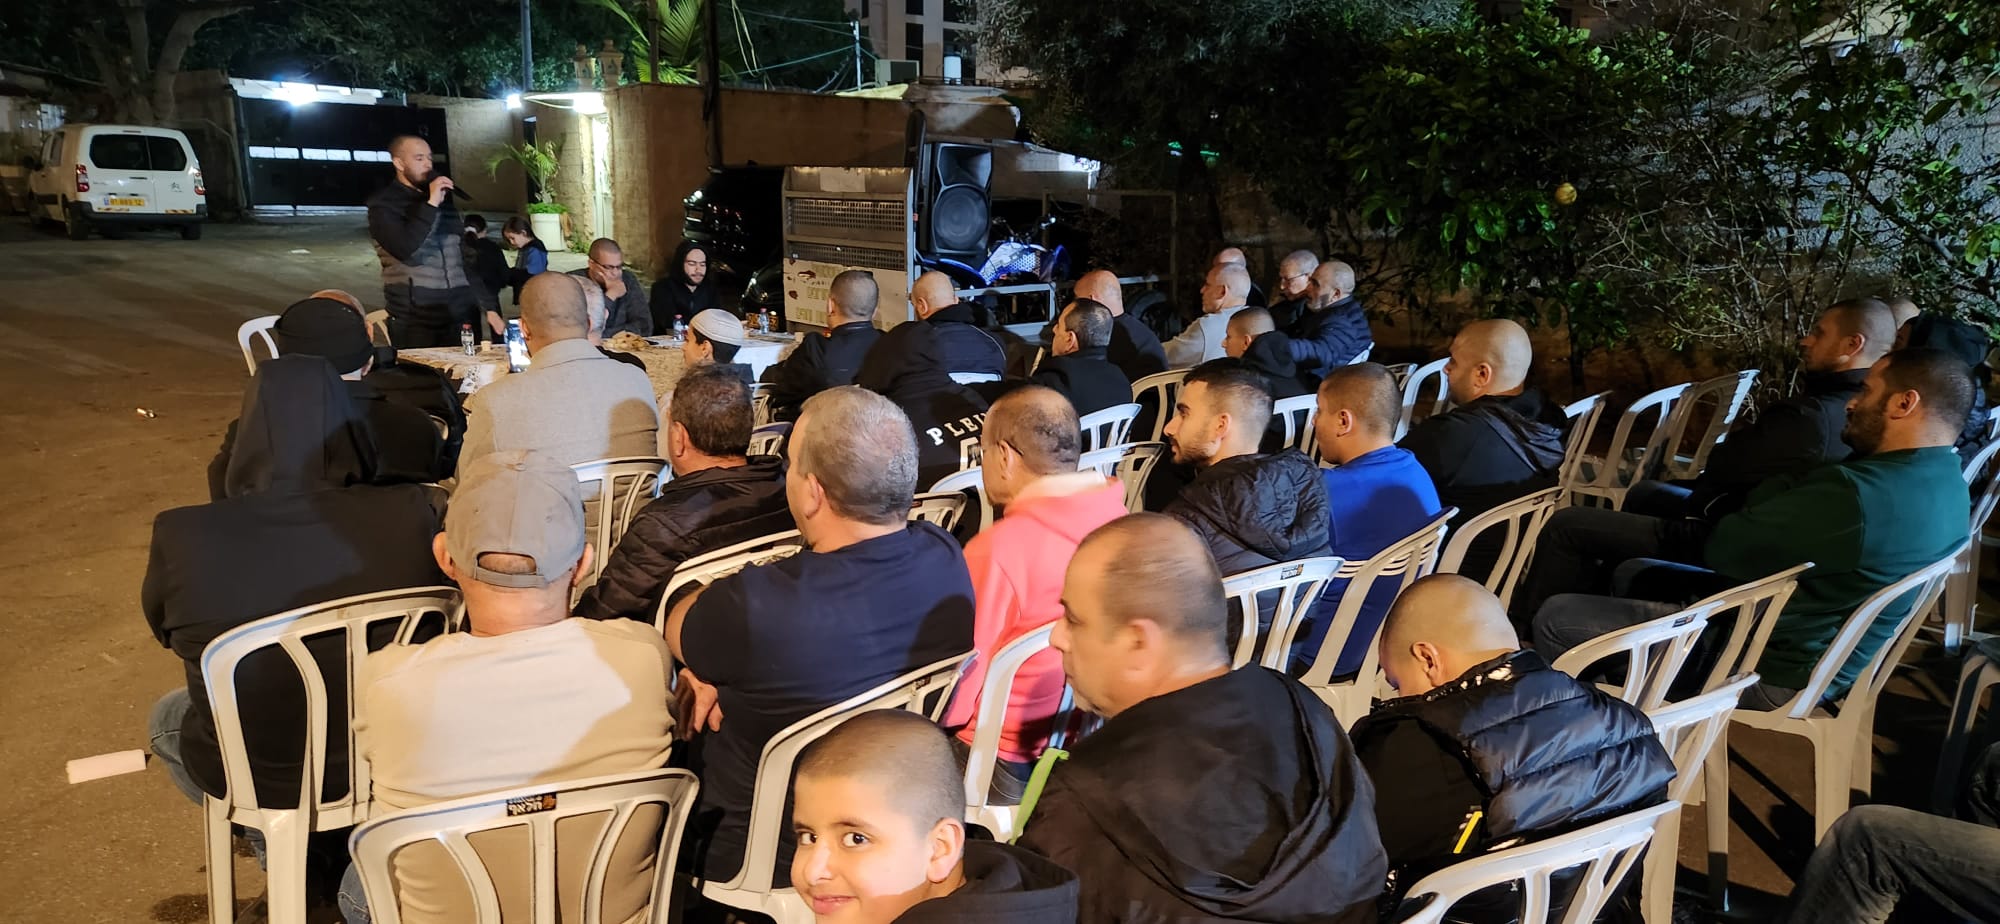 يافا: آل موسى يستضيفون الدرس الثاني لأسبوع الدعوة إستقبالًا لرمضان